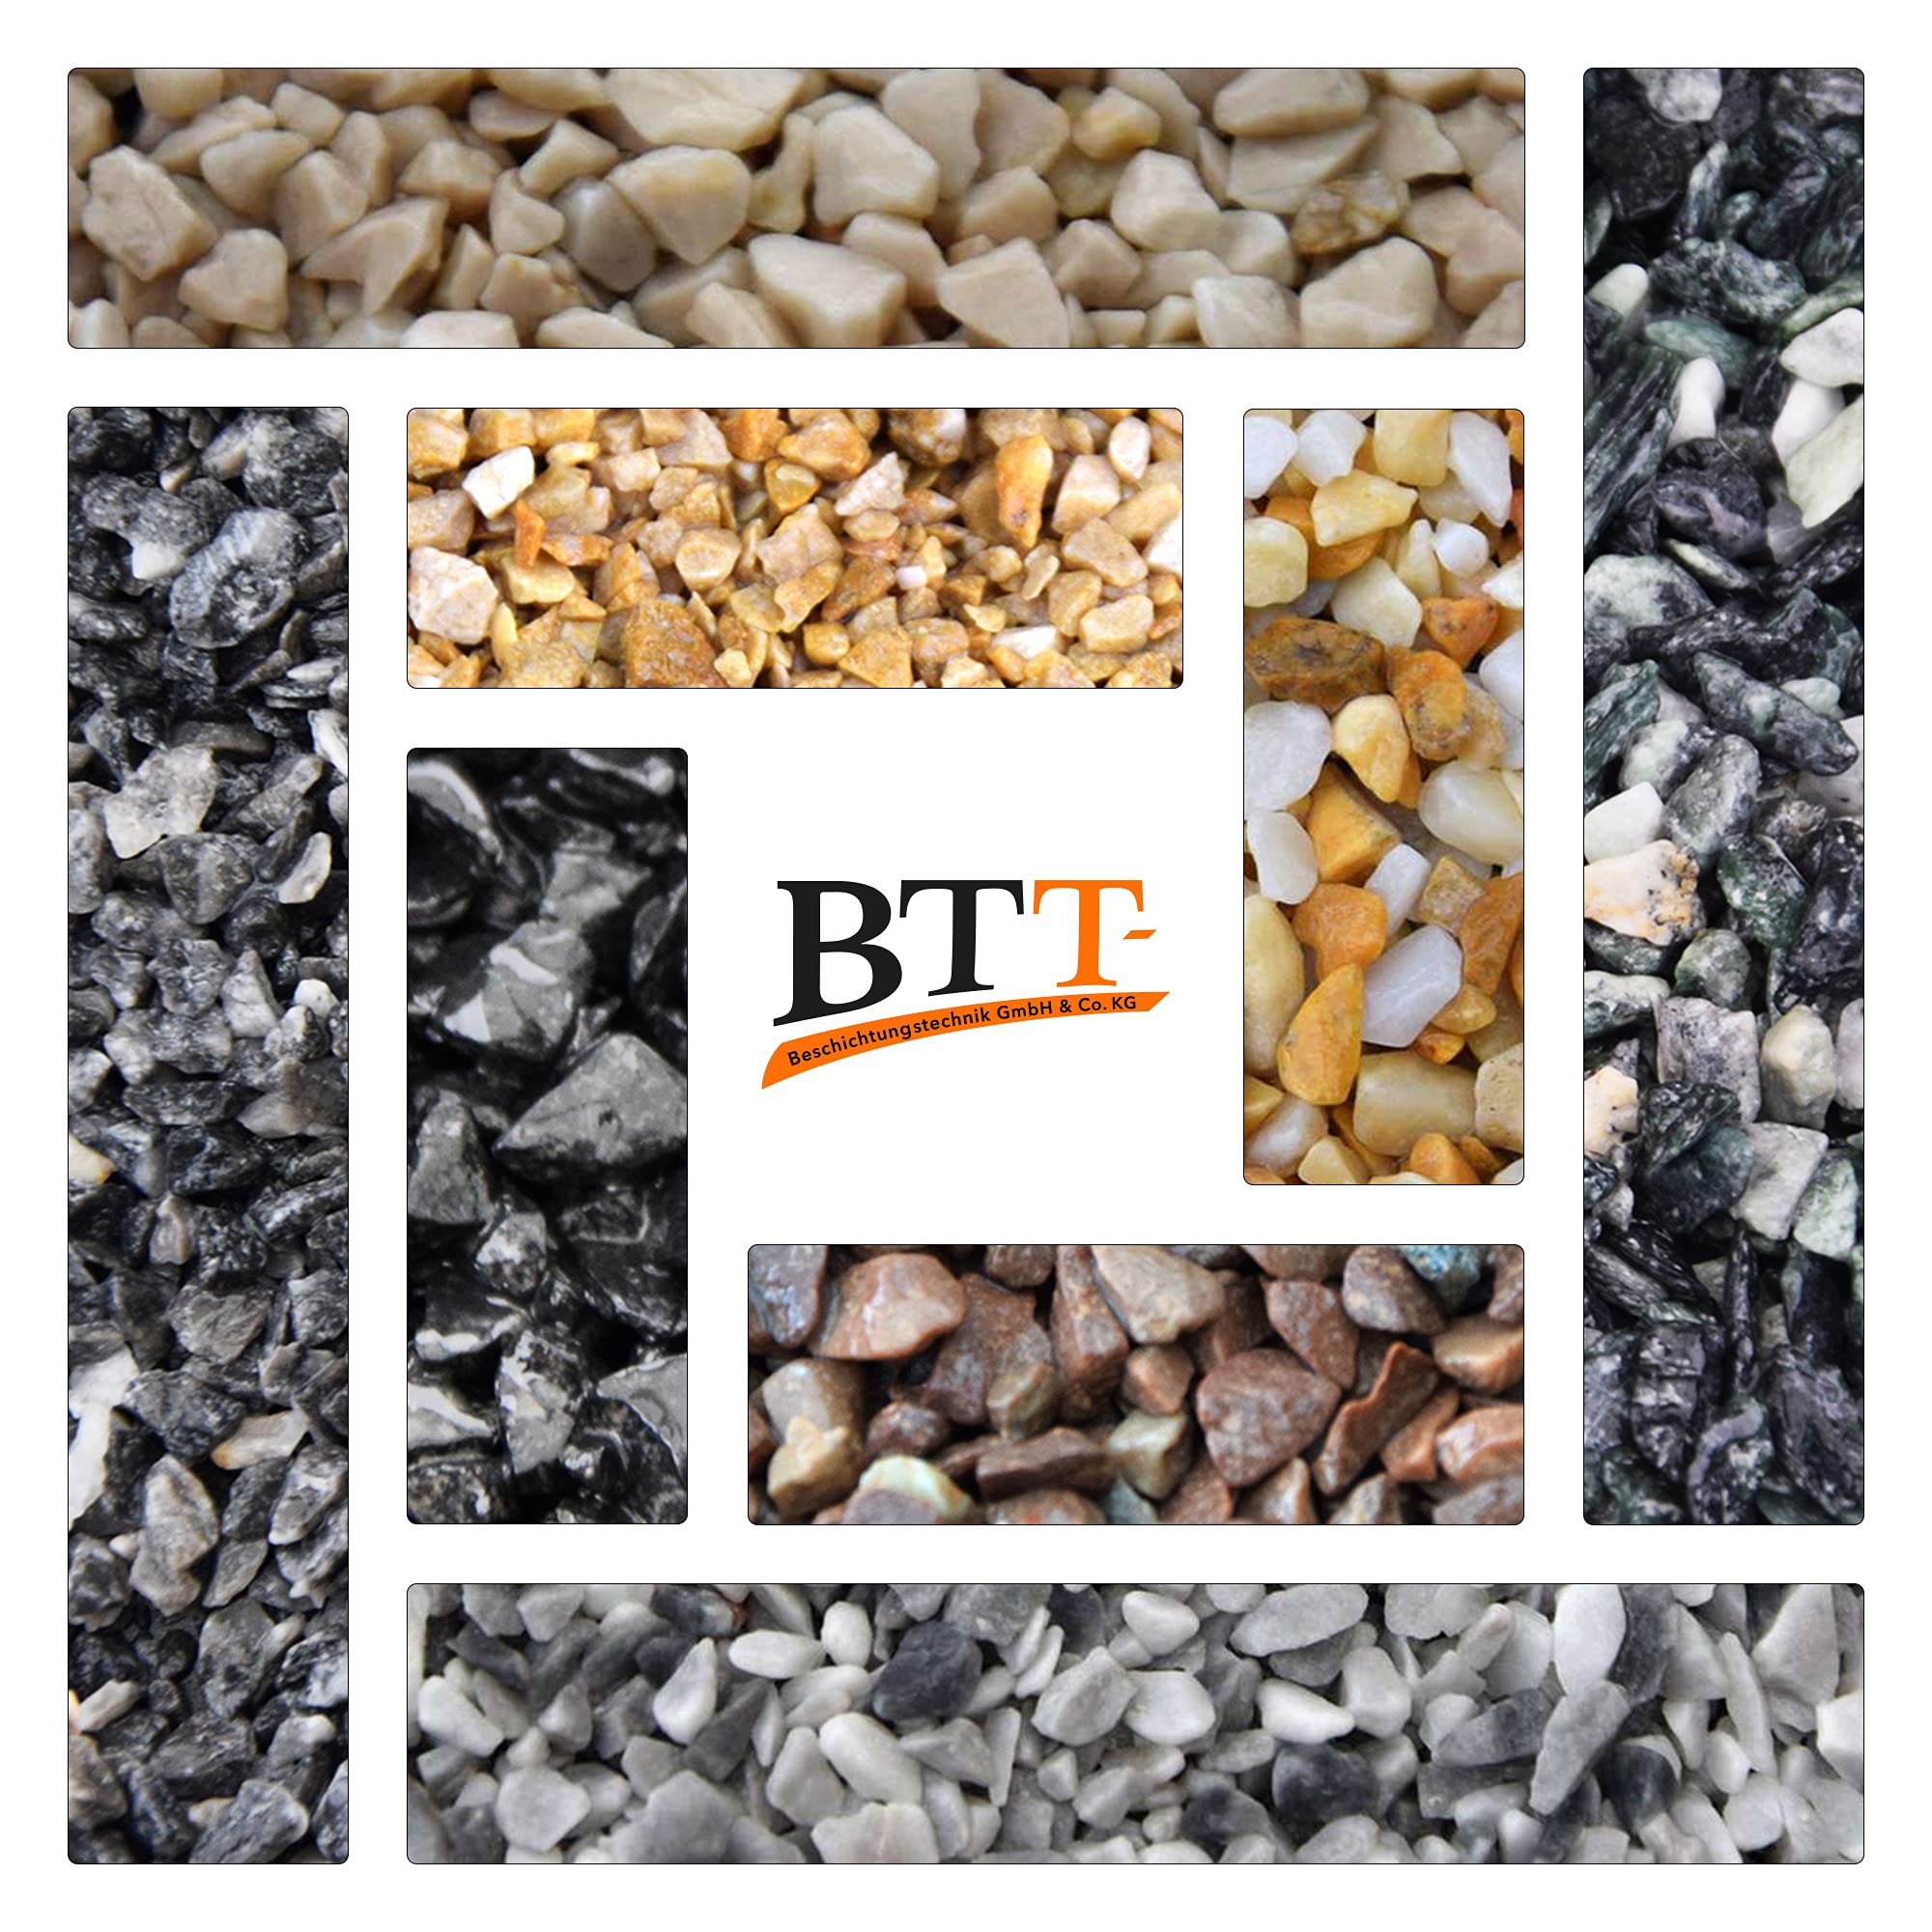 BTT-ST Steinteppich aus Marmorkies Rosa Corallo und Epoxidharz Bindemittel für 2,4m² Marmorstein Marmorkiesel Steinboden Bodenbeschichtung